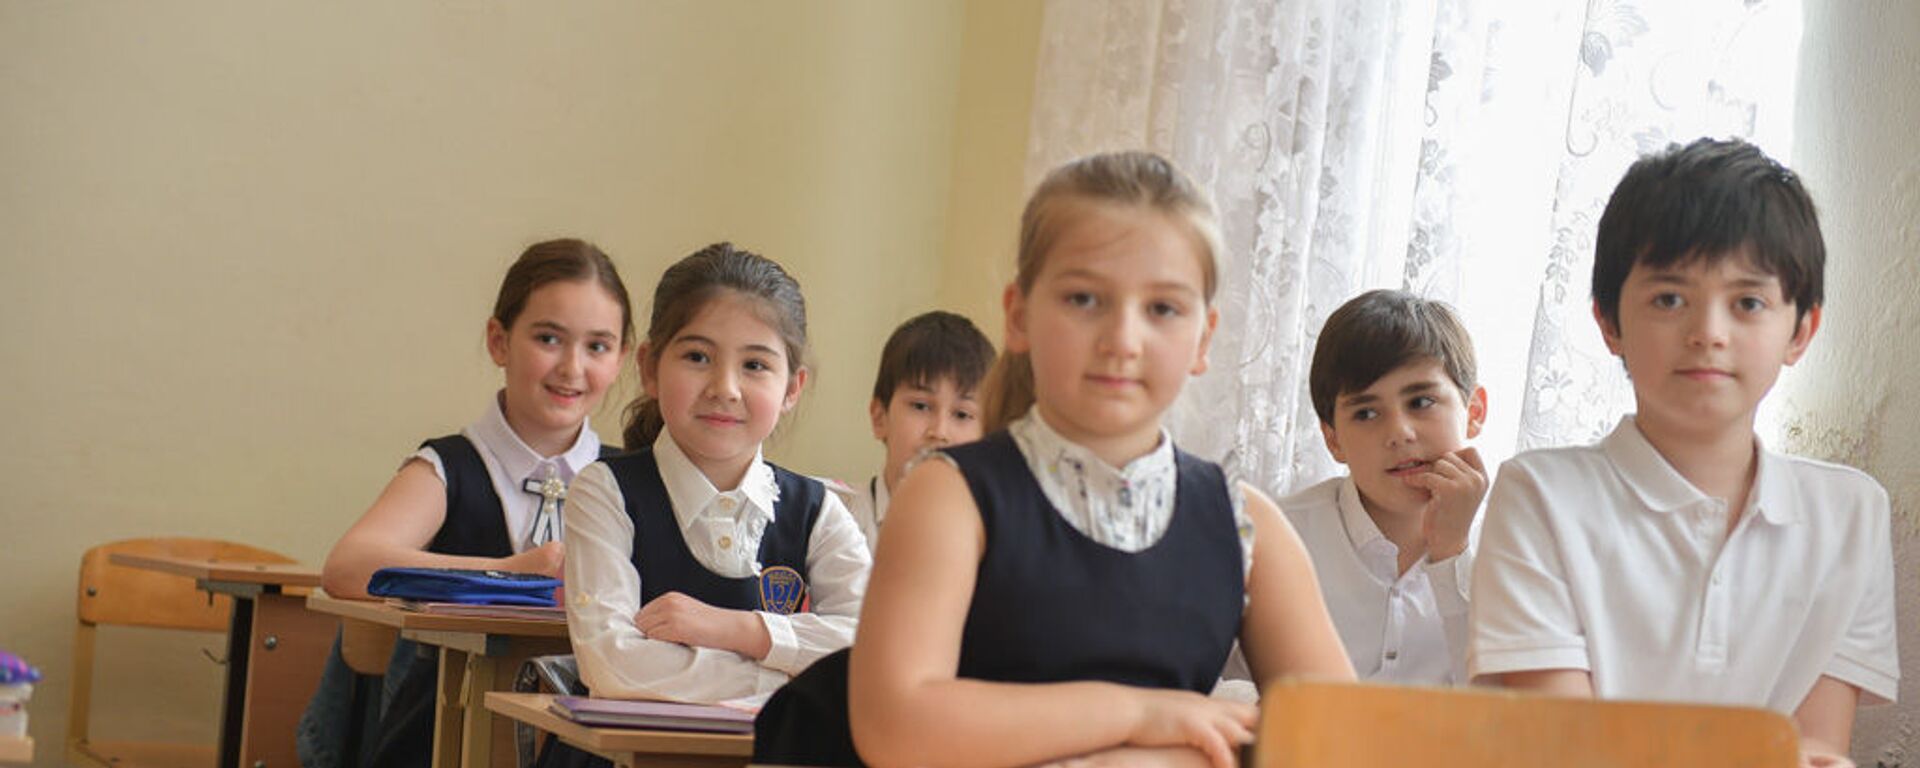 Первый день учебы учеников 2 школы - Sputnik Абхазия, 1920, 31.08.2020